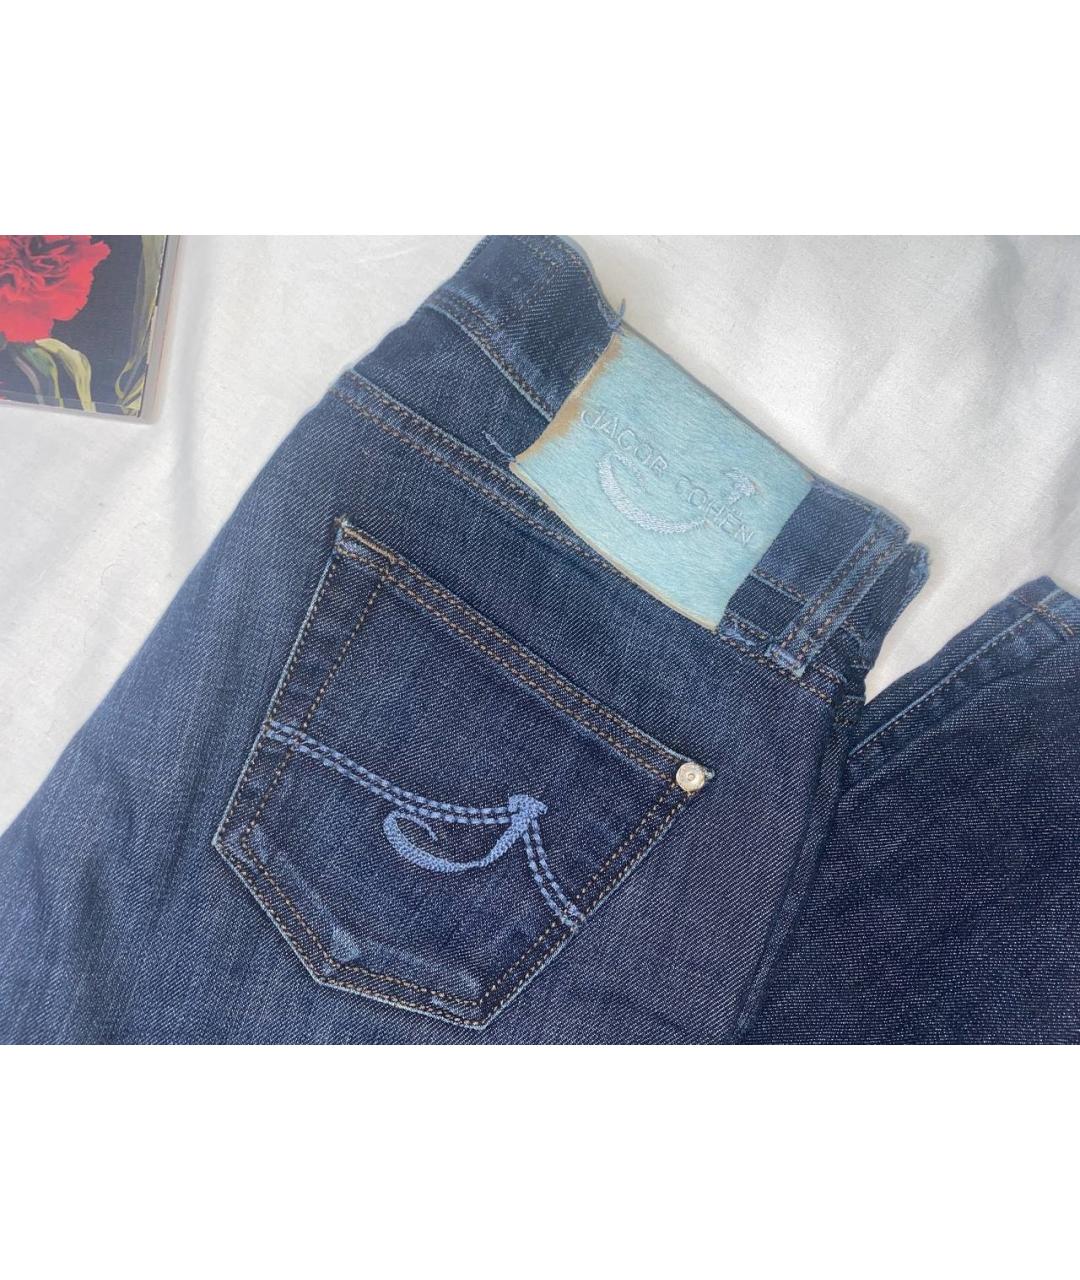 JACOB COHEN Синие хлопковые прямые джинсы, фото 3